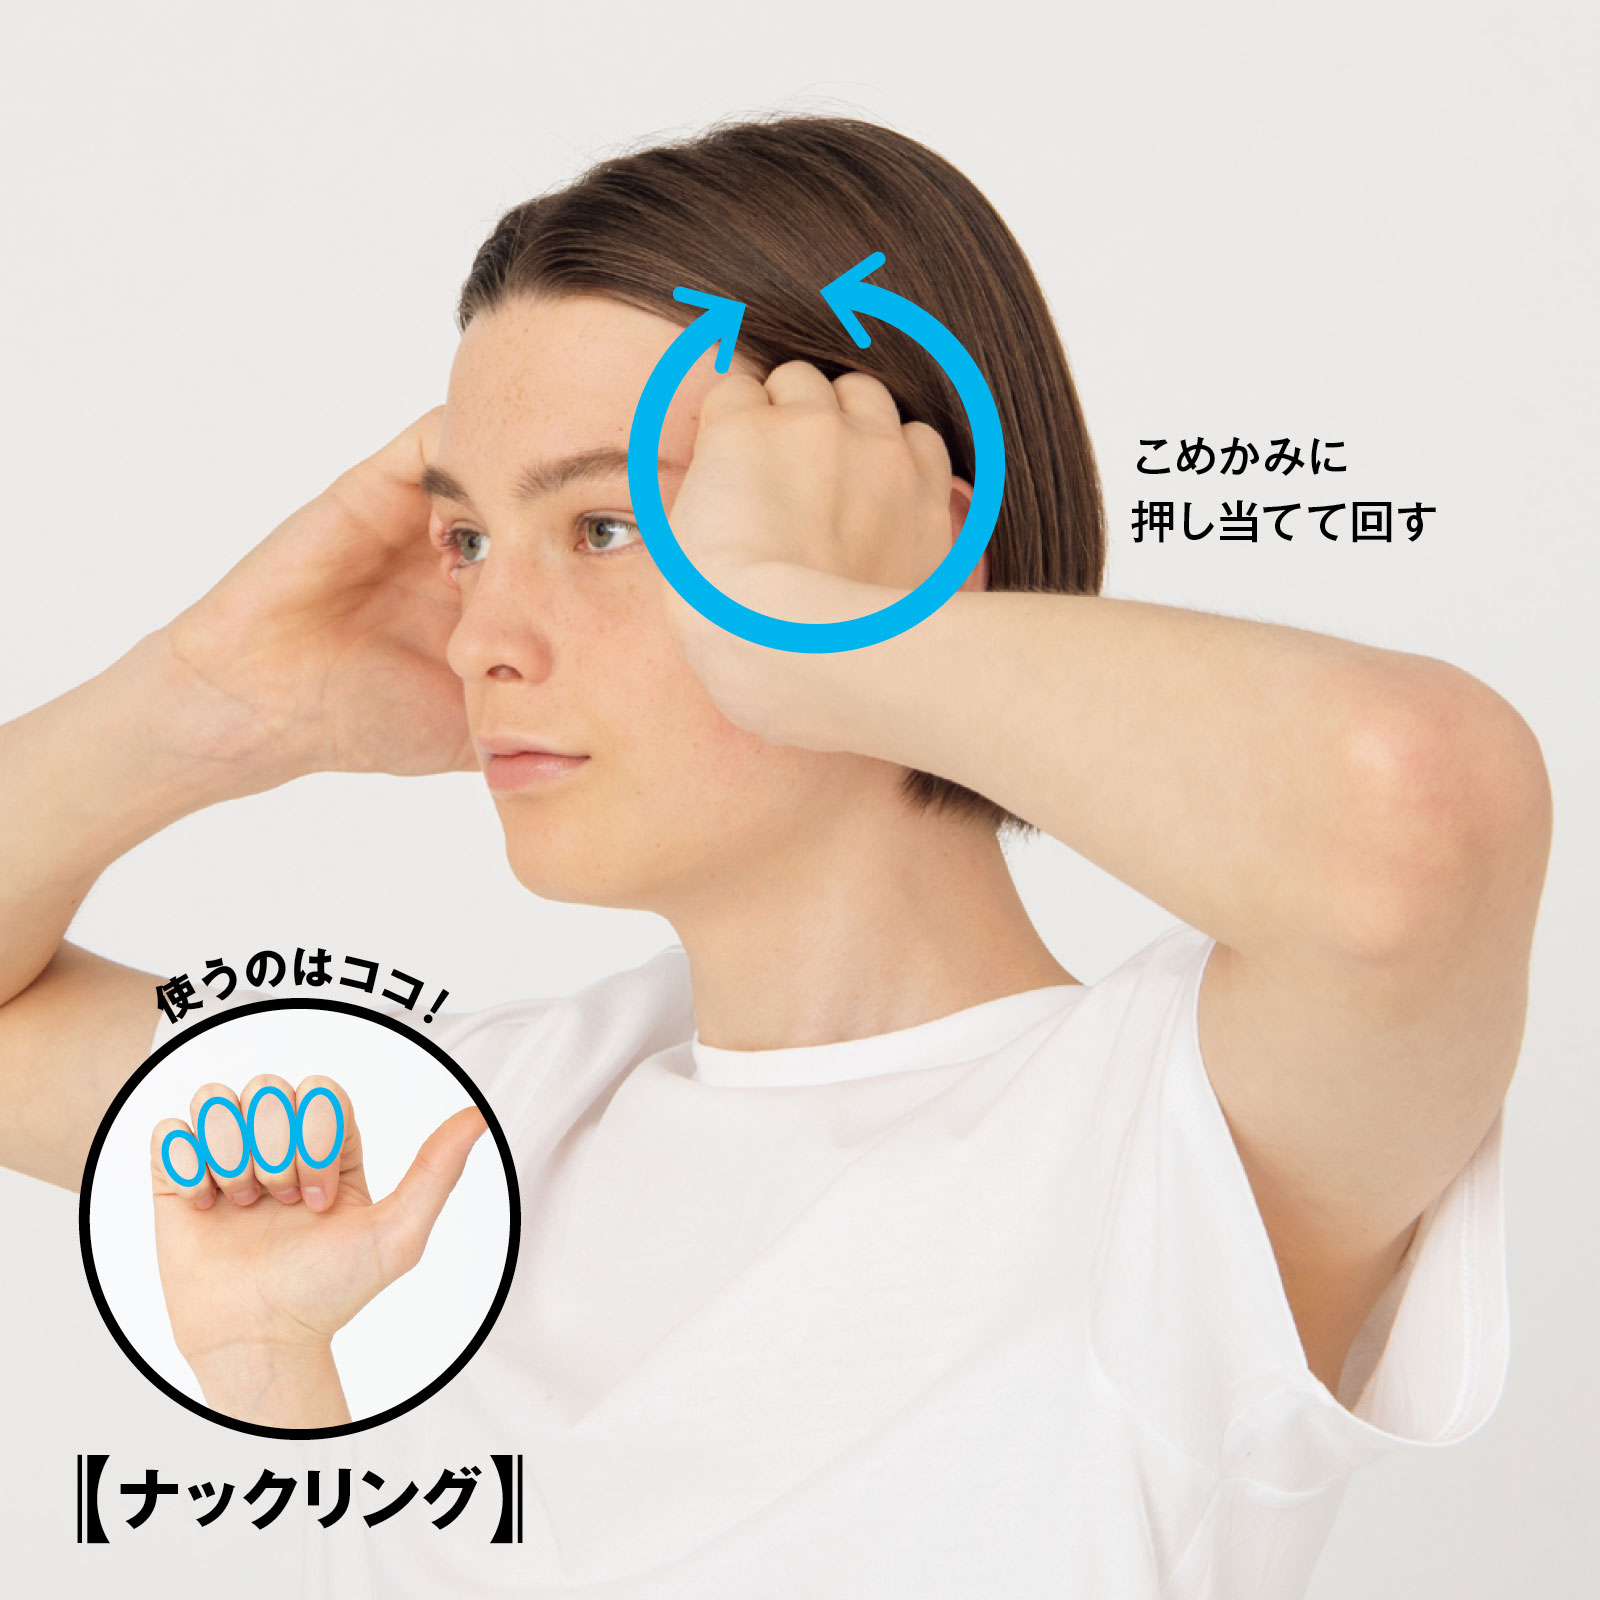 頭痛を楽にするヘッドマッサージのやり方 1